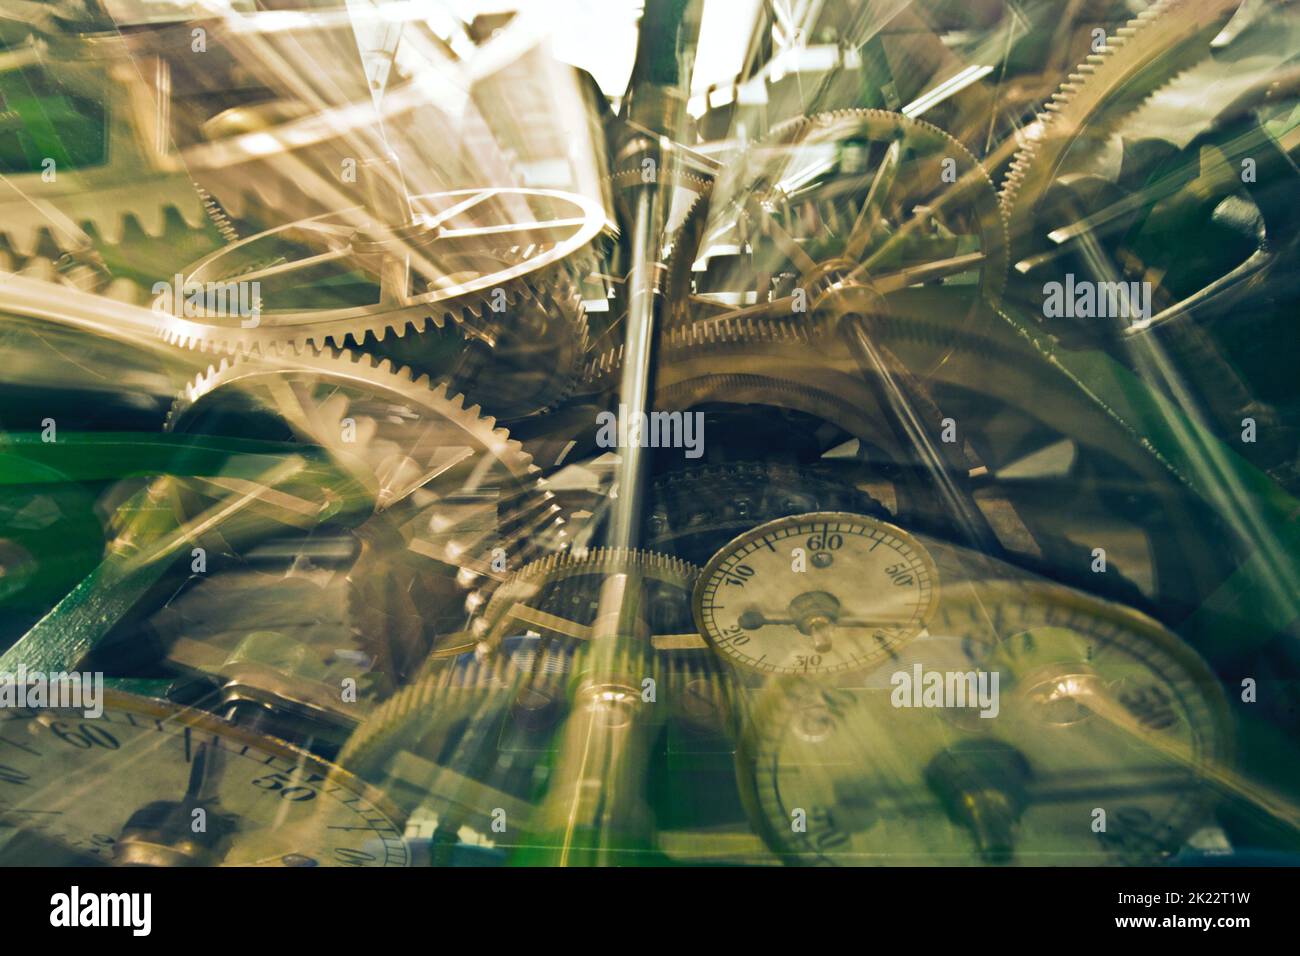 Perdersi nel caos del tempo. Immagine ottimizzata digitalmente del lavoro con orologio. Foto Stock